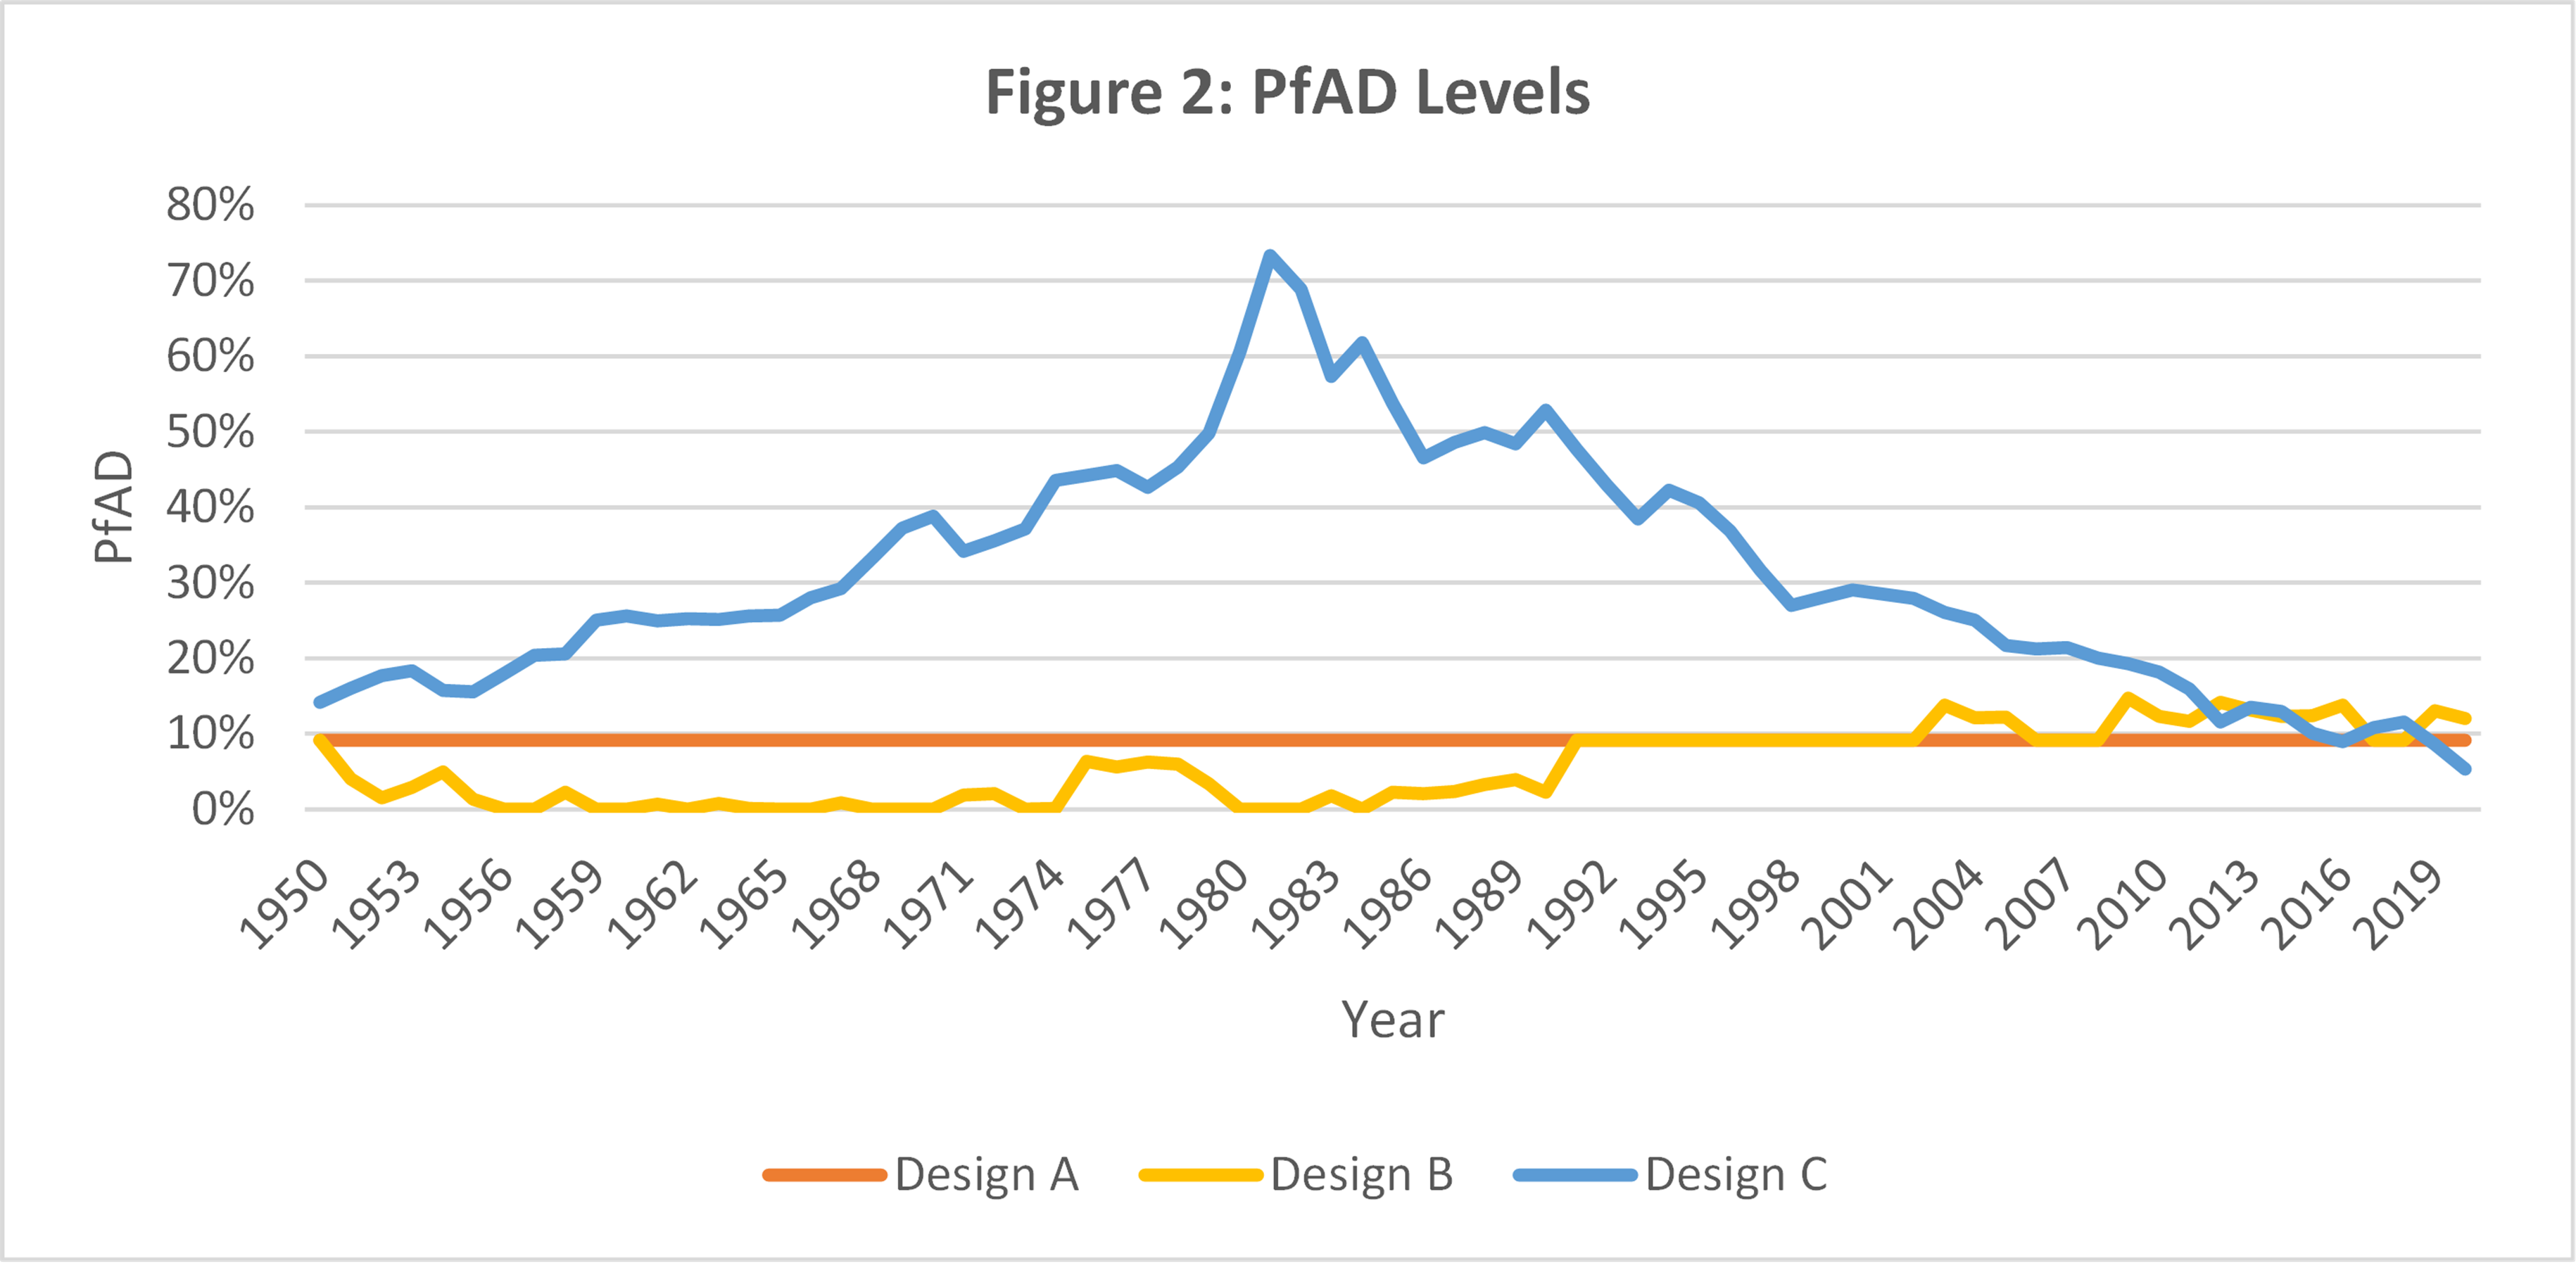 PfAD levels